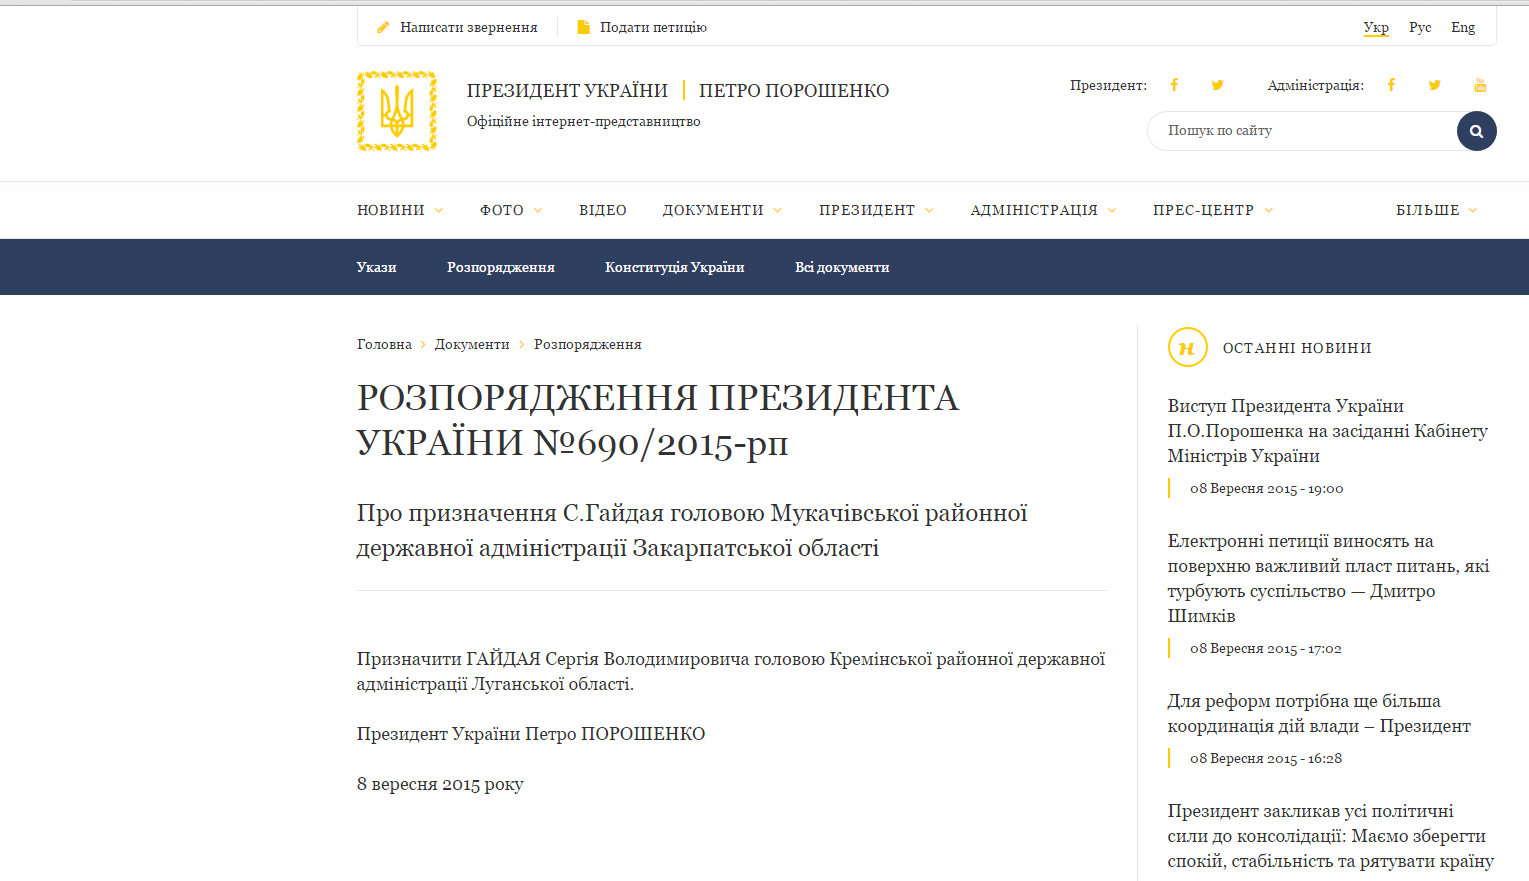 Появилось официальное распоряжение Президента Украины о назначении Сергея Гайдая председателем РГА. Однако, какой именно администрации пока не понятно.